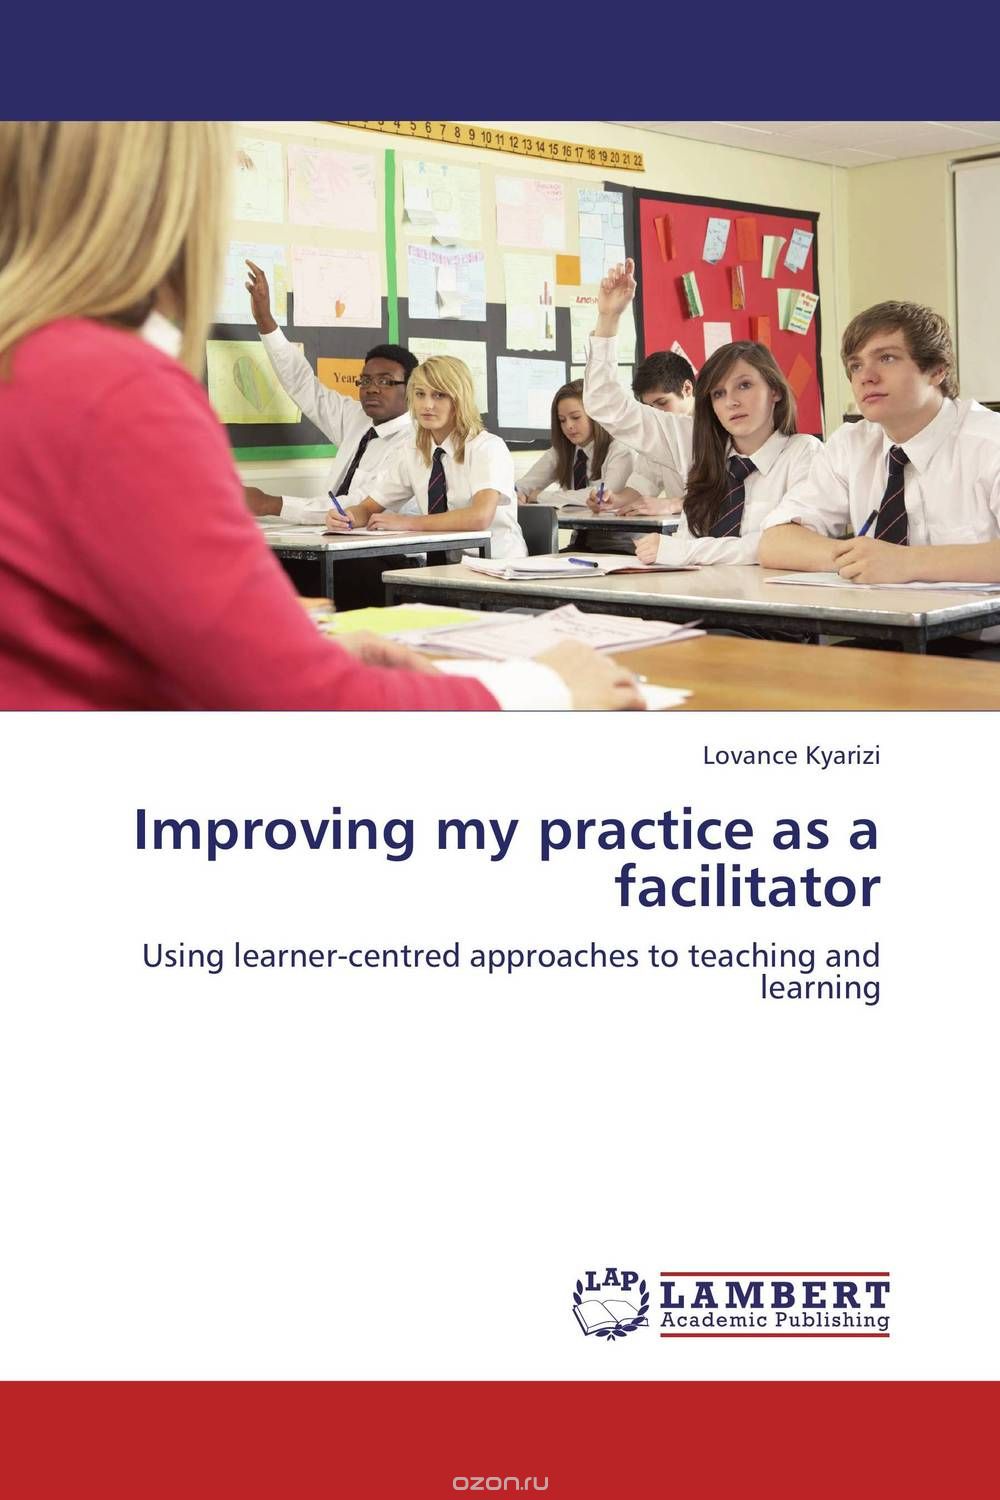 Скачать книгу "Improving my practice as a facilitator"